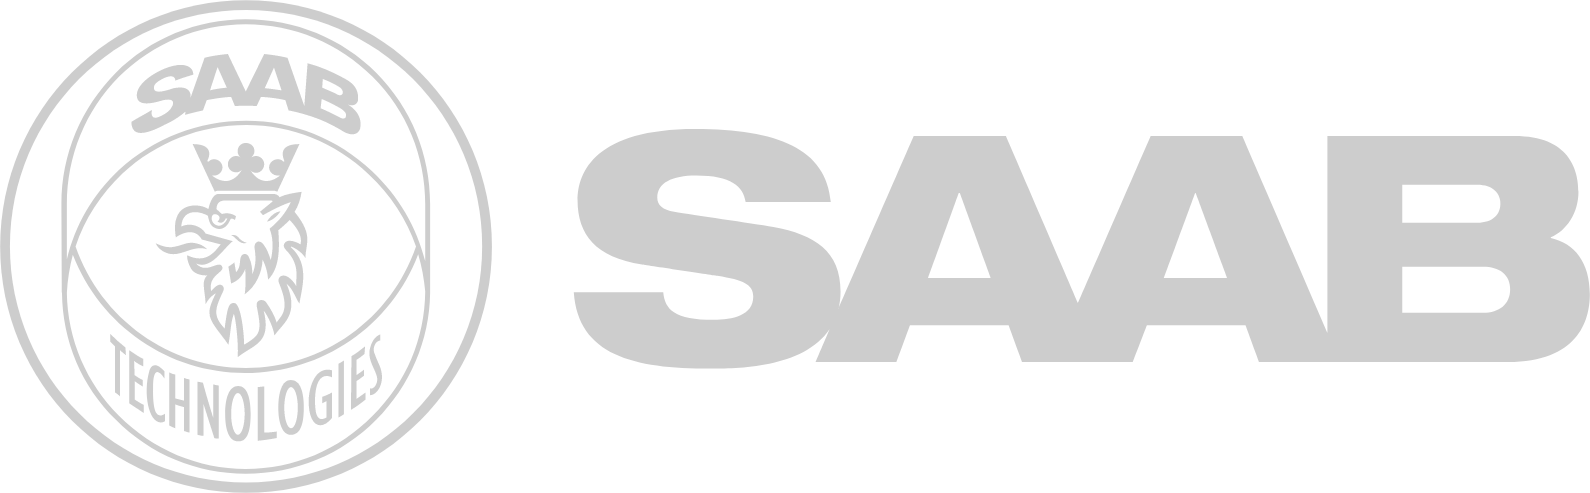 SAAB AB logo grand pour les fonds sombres (PNG transparent)